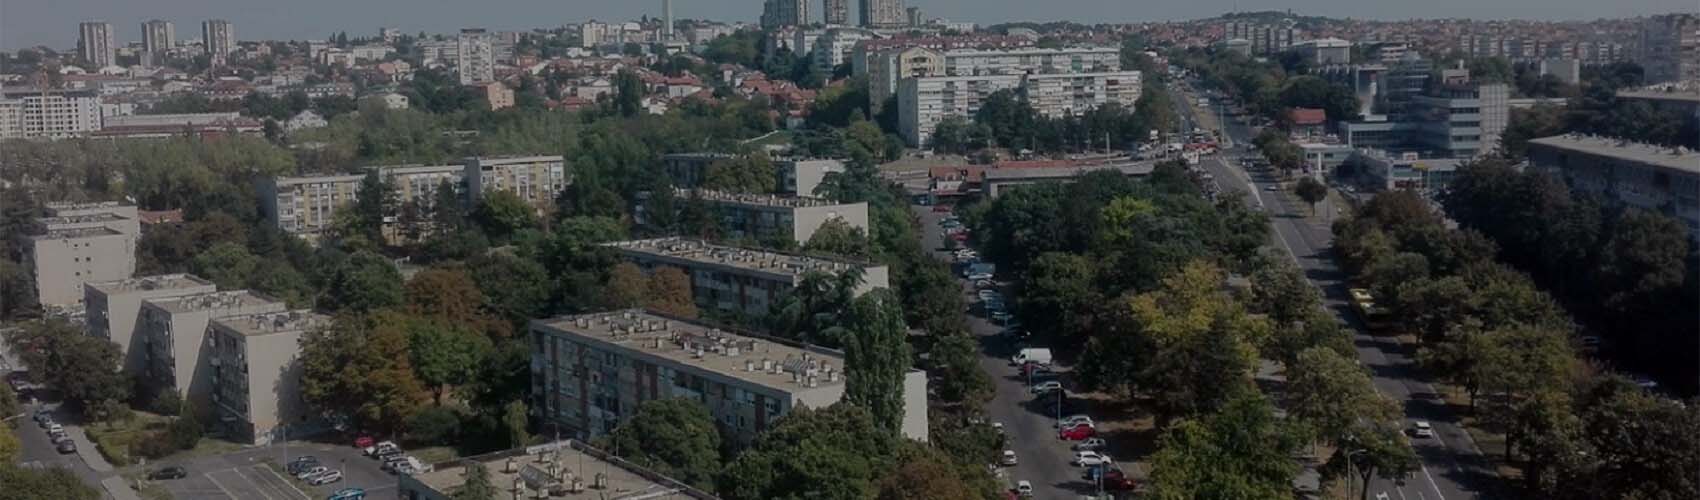 Kasko osiguranje Šumice | Beograd